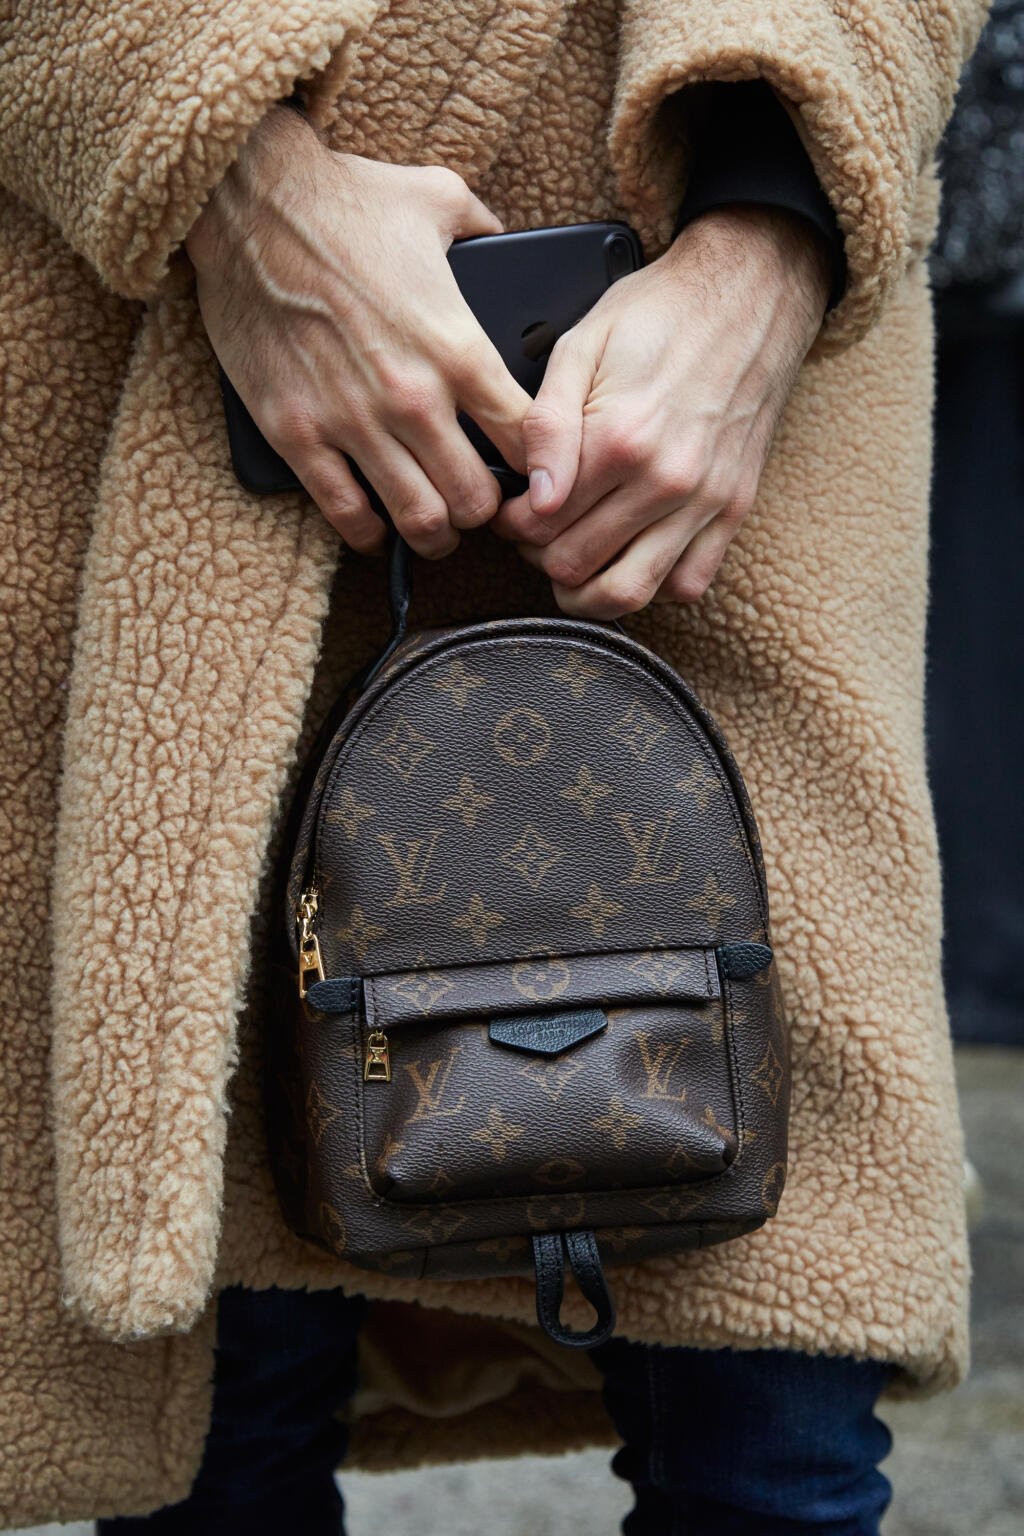 Tvoja MEGA príležitosť! Chceš mini ruksak Louis Vuitton?